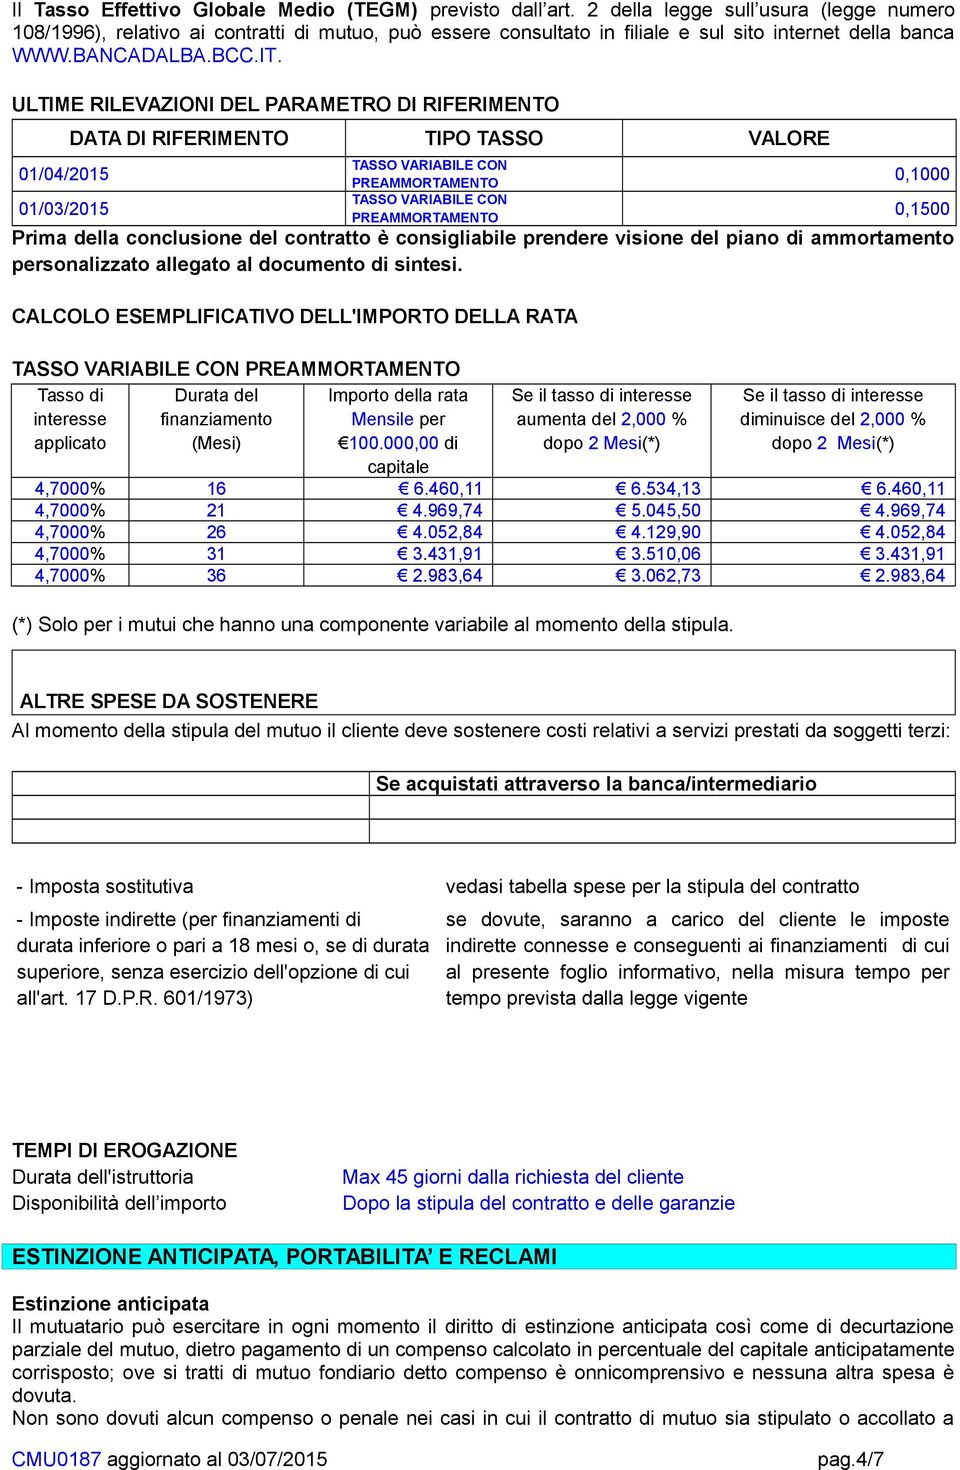 ULTIME RILEVAZIONI DEL PARAMETRO DI RIFERIMENTO 01/04/2015 01/03/2015 DATA DI RIFERIMENTO TIPO TASSO VALORE TASSO VARIABILE CON PREAMMORTAMENTO 0,1000 TASSO VARIABILE CON PREAMMORTAMENTO 0,1500 Prima